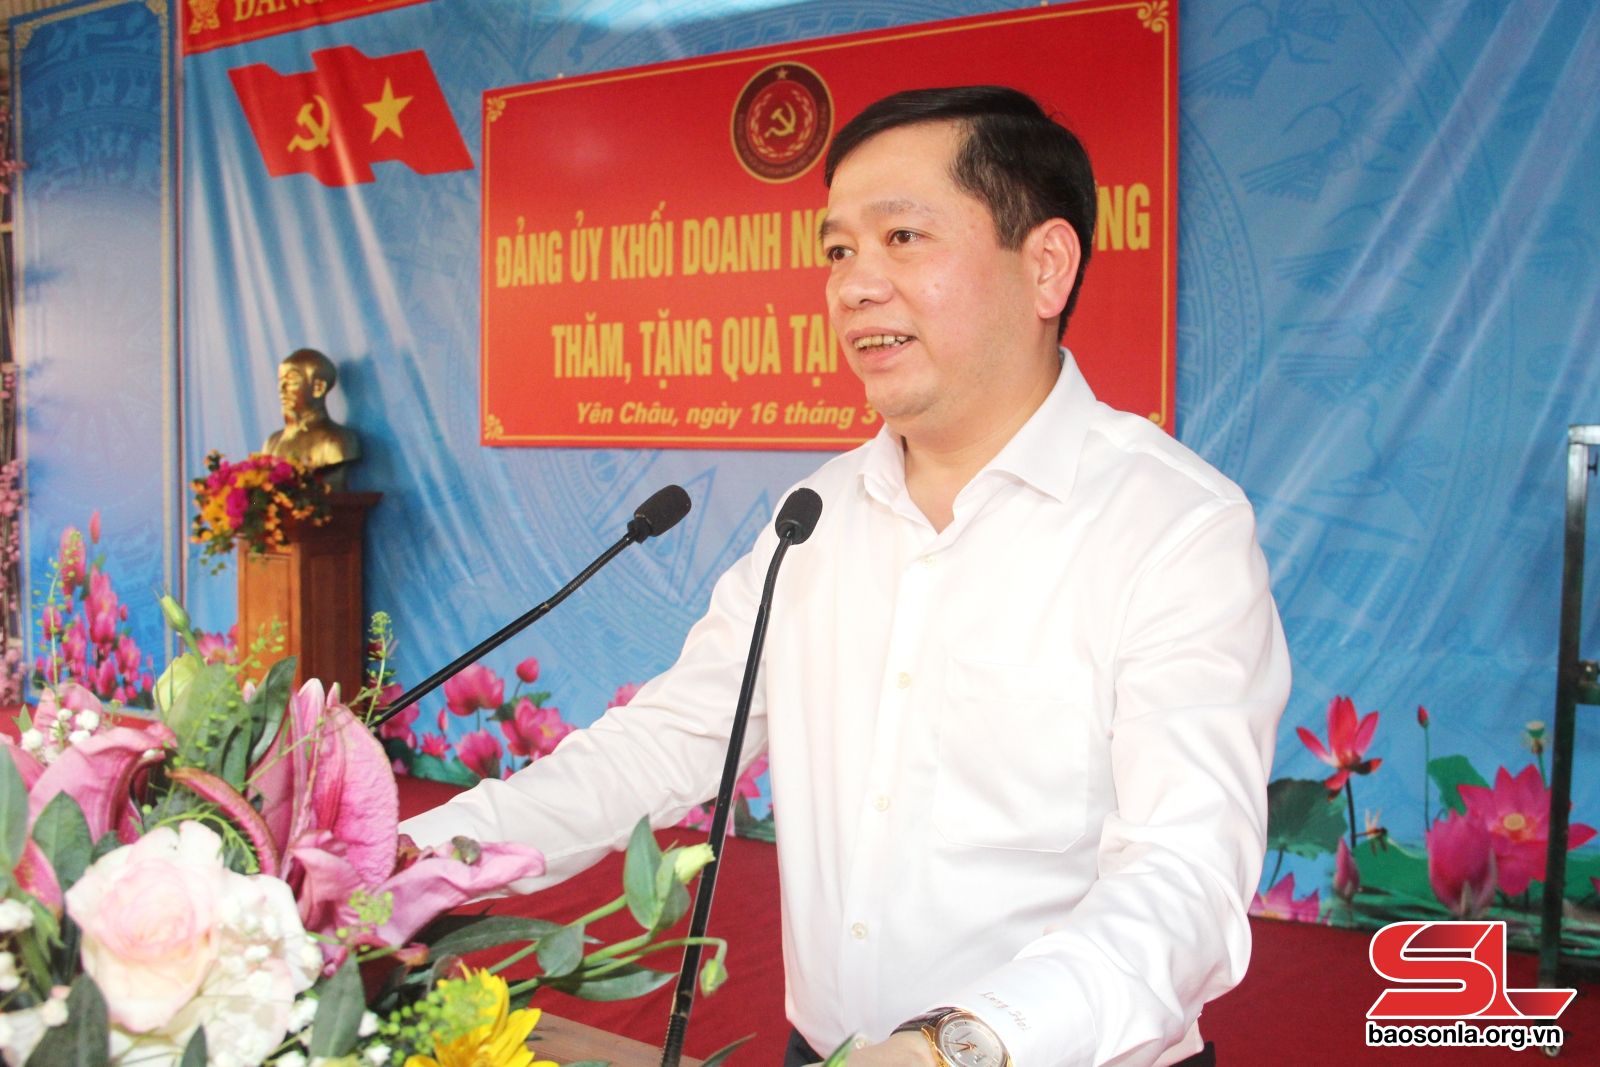 Đồng chí Nguyễn Long Hải, Bí thư Đảng ủy Khối Doanh nghiệp Trung ương, phát biểu tại chương trình.